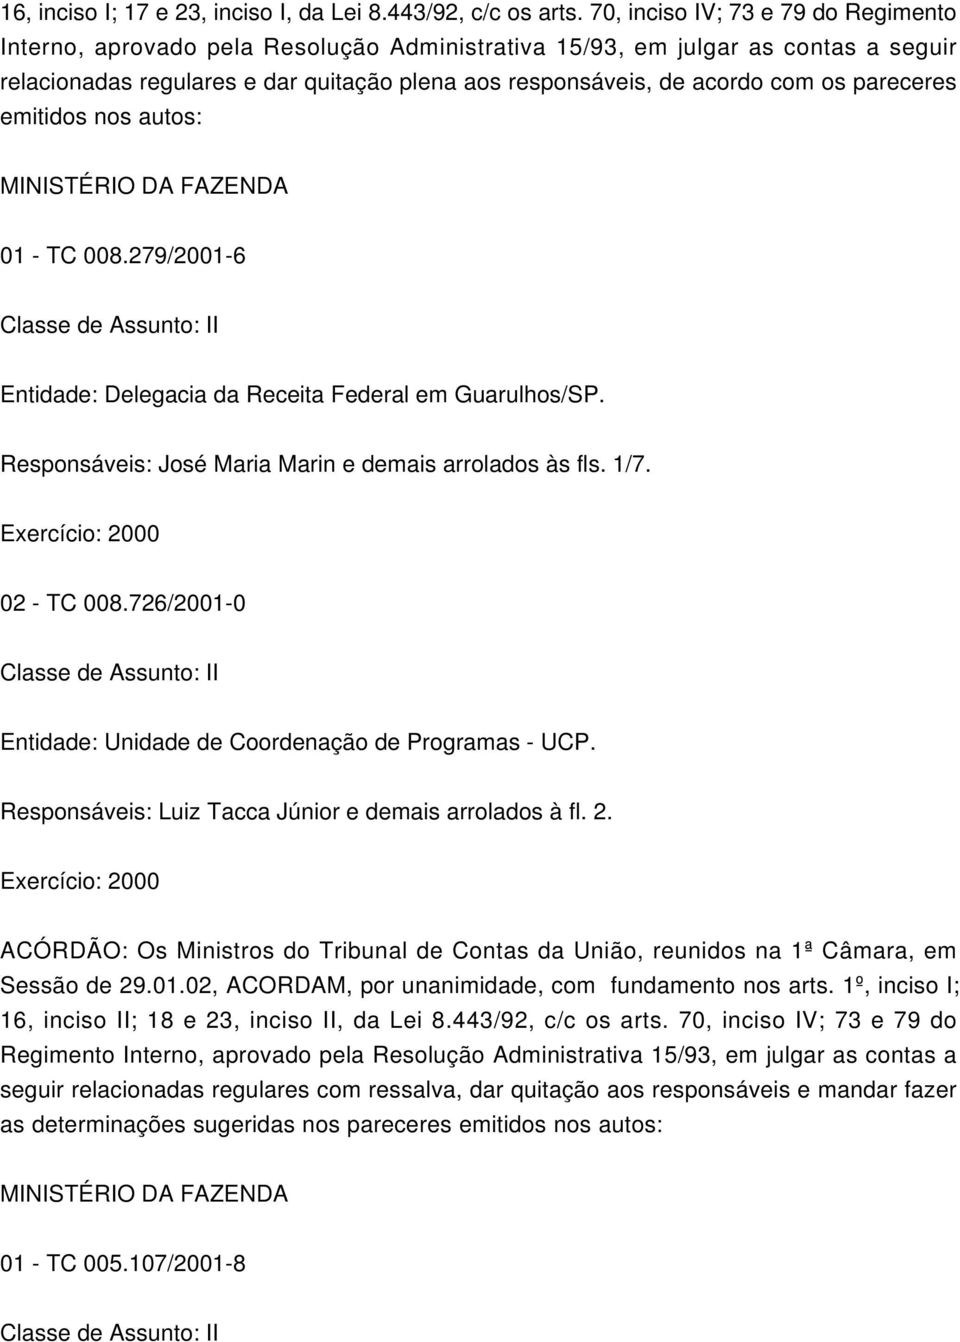 acordo com os pareceres emitidos nos autos: 01 - TC 008.279/2001-6 Entidade: Delegacia da Receita Federal em Guarulhos/SP. Responsáveis: José Maria Marin e demais arrolados às fls. 1/7.